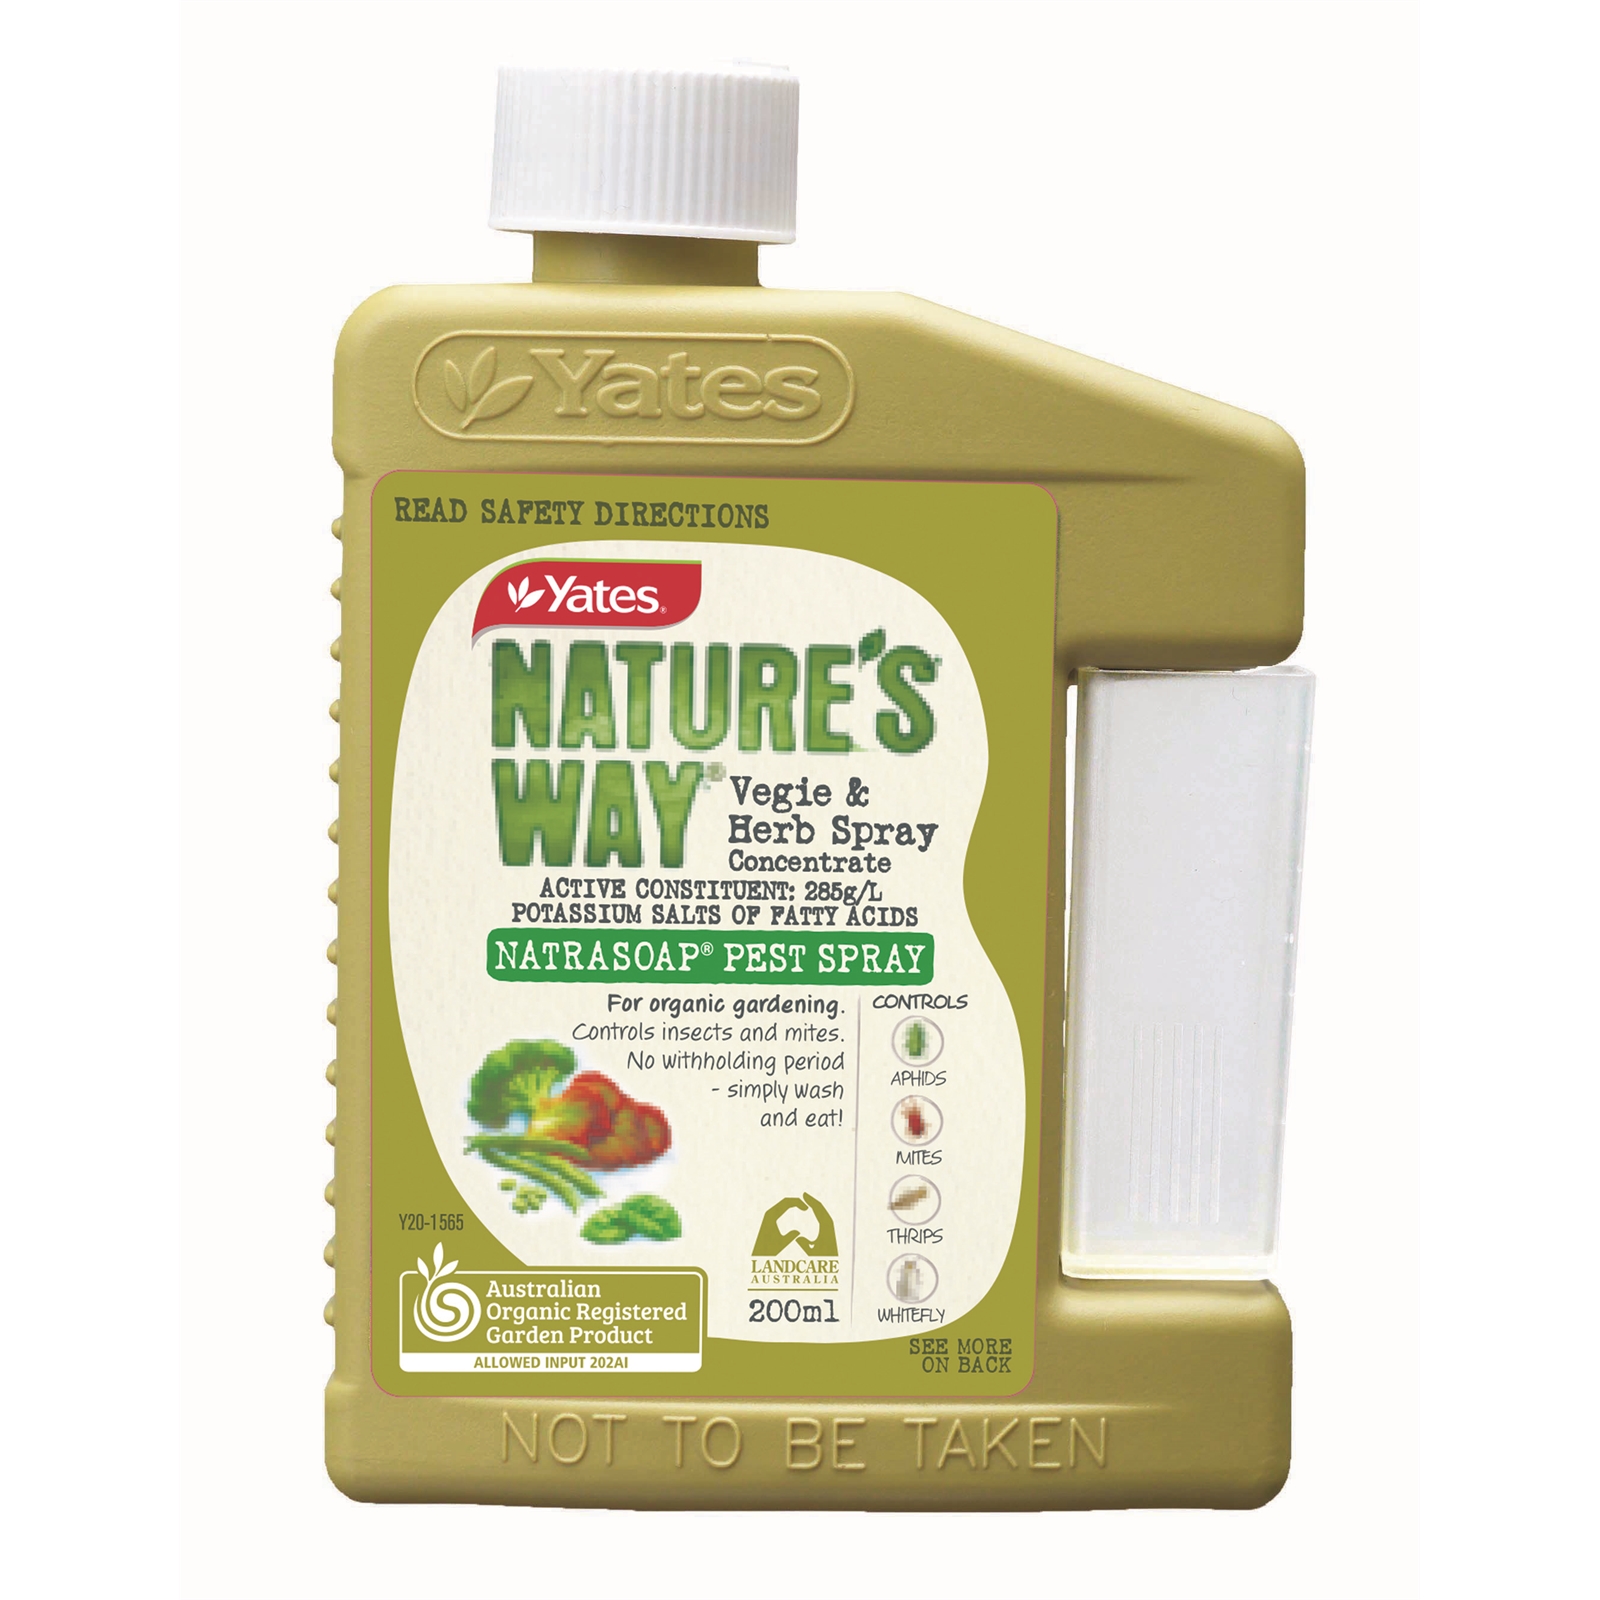 Yates 200ml Nature's Way Vegie And Herb Pest Spray